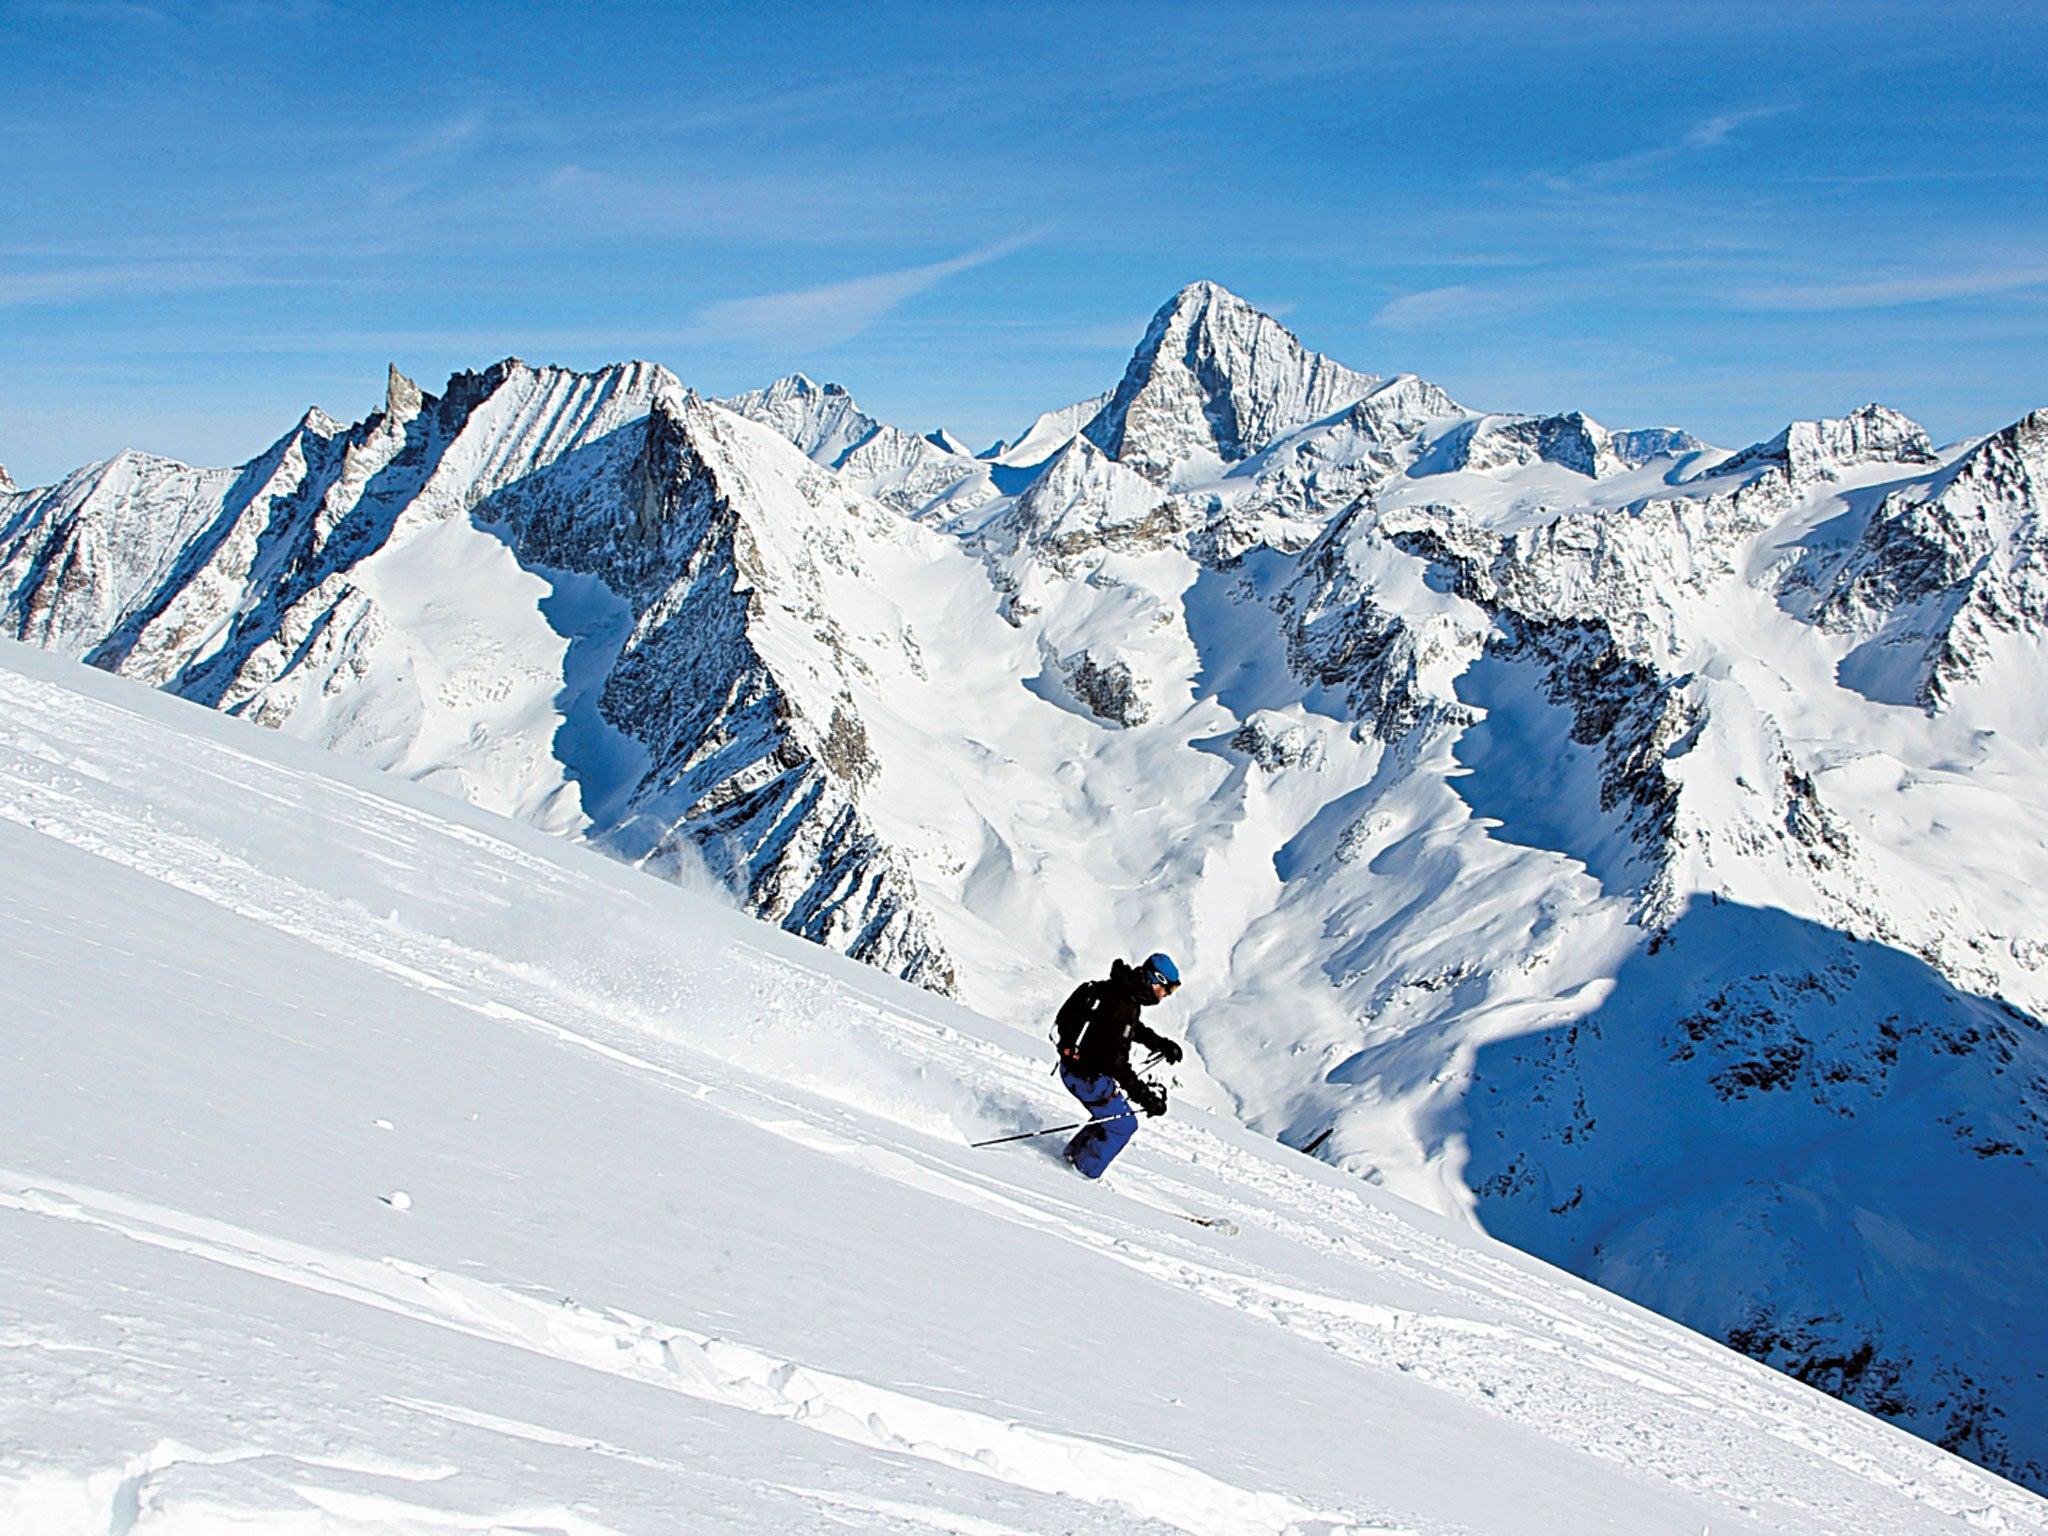 Skiing in Switzerland: Going off-piste in Grimentz 